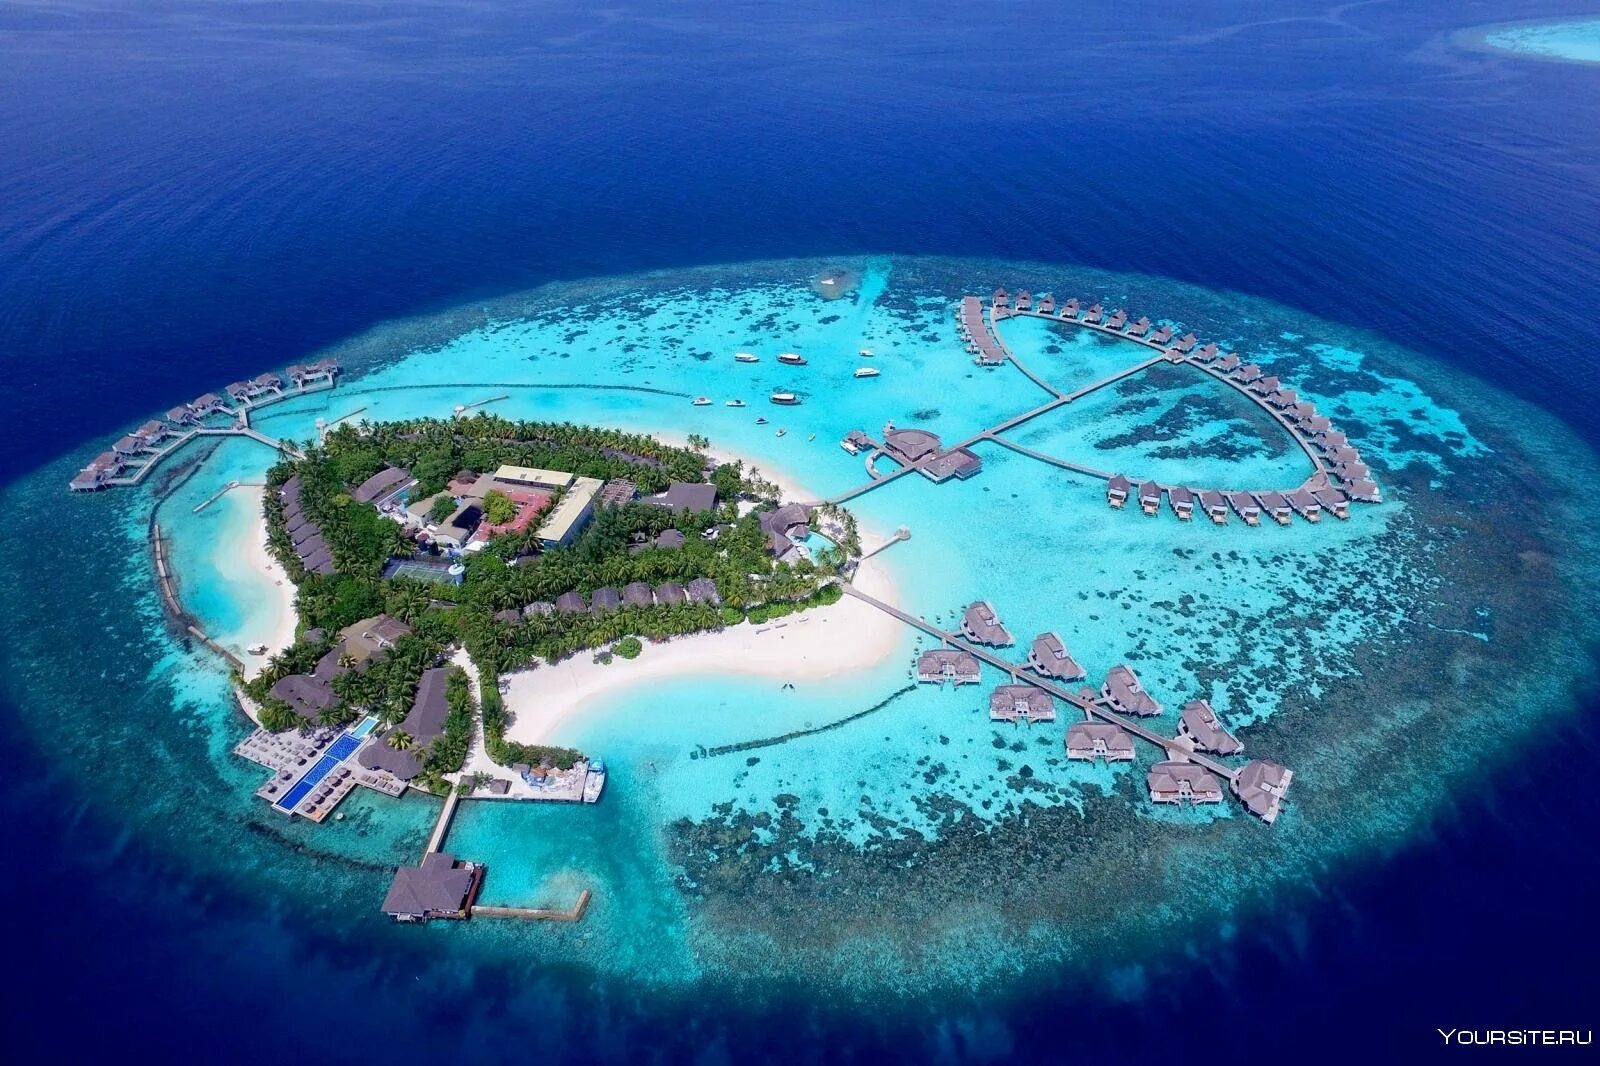 Centara Grand Island Resort Spa Maldives. Атолл Адду Мальдивы. Centara Grand Island 5 Мальдивы. Grand Centara Мальдивы Мальдивы отель. К какой стране относится остров